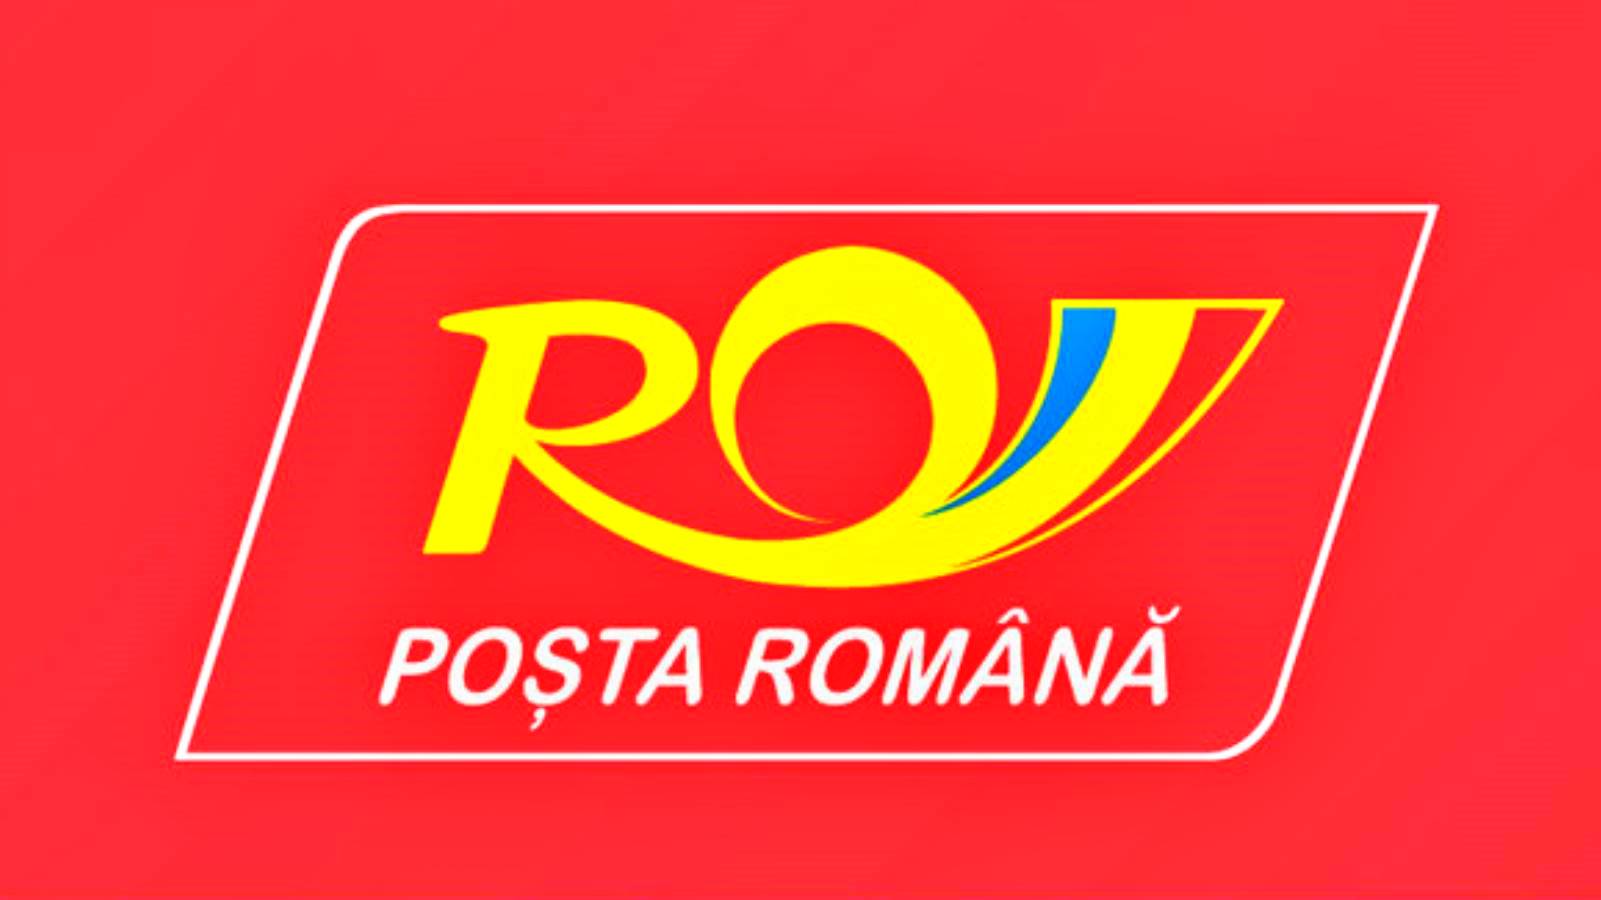 Romanian postiviesti romanialaisille koskien lähetysten edullisia hintoja